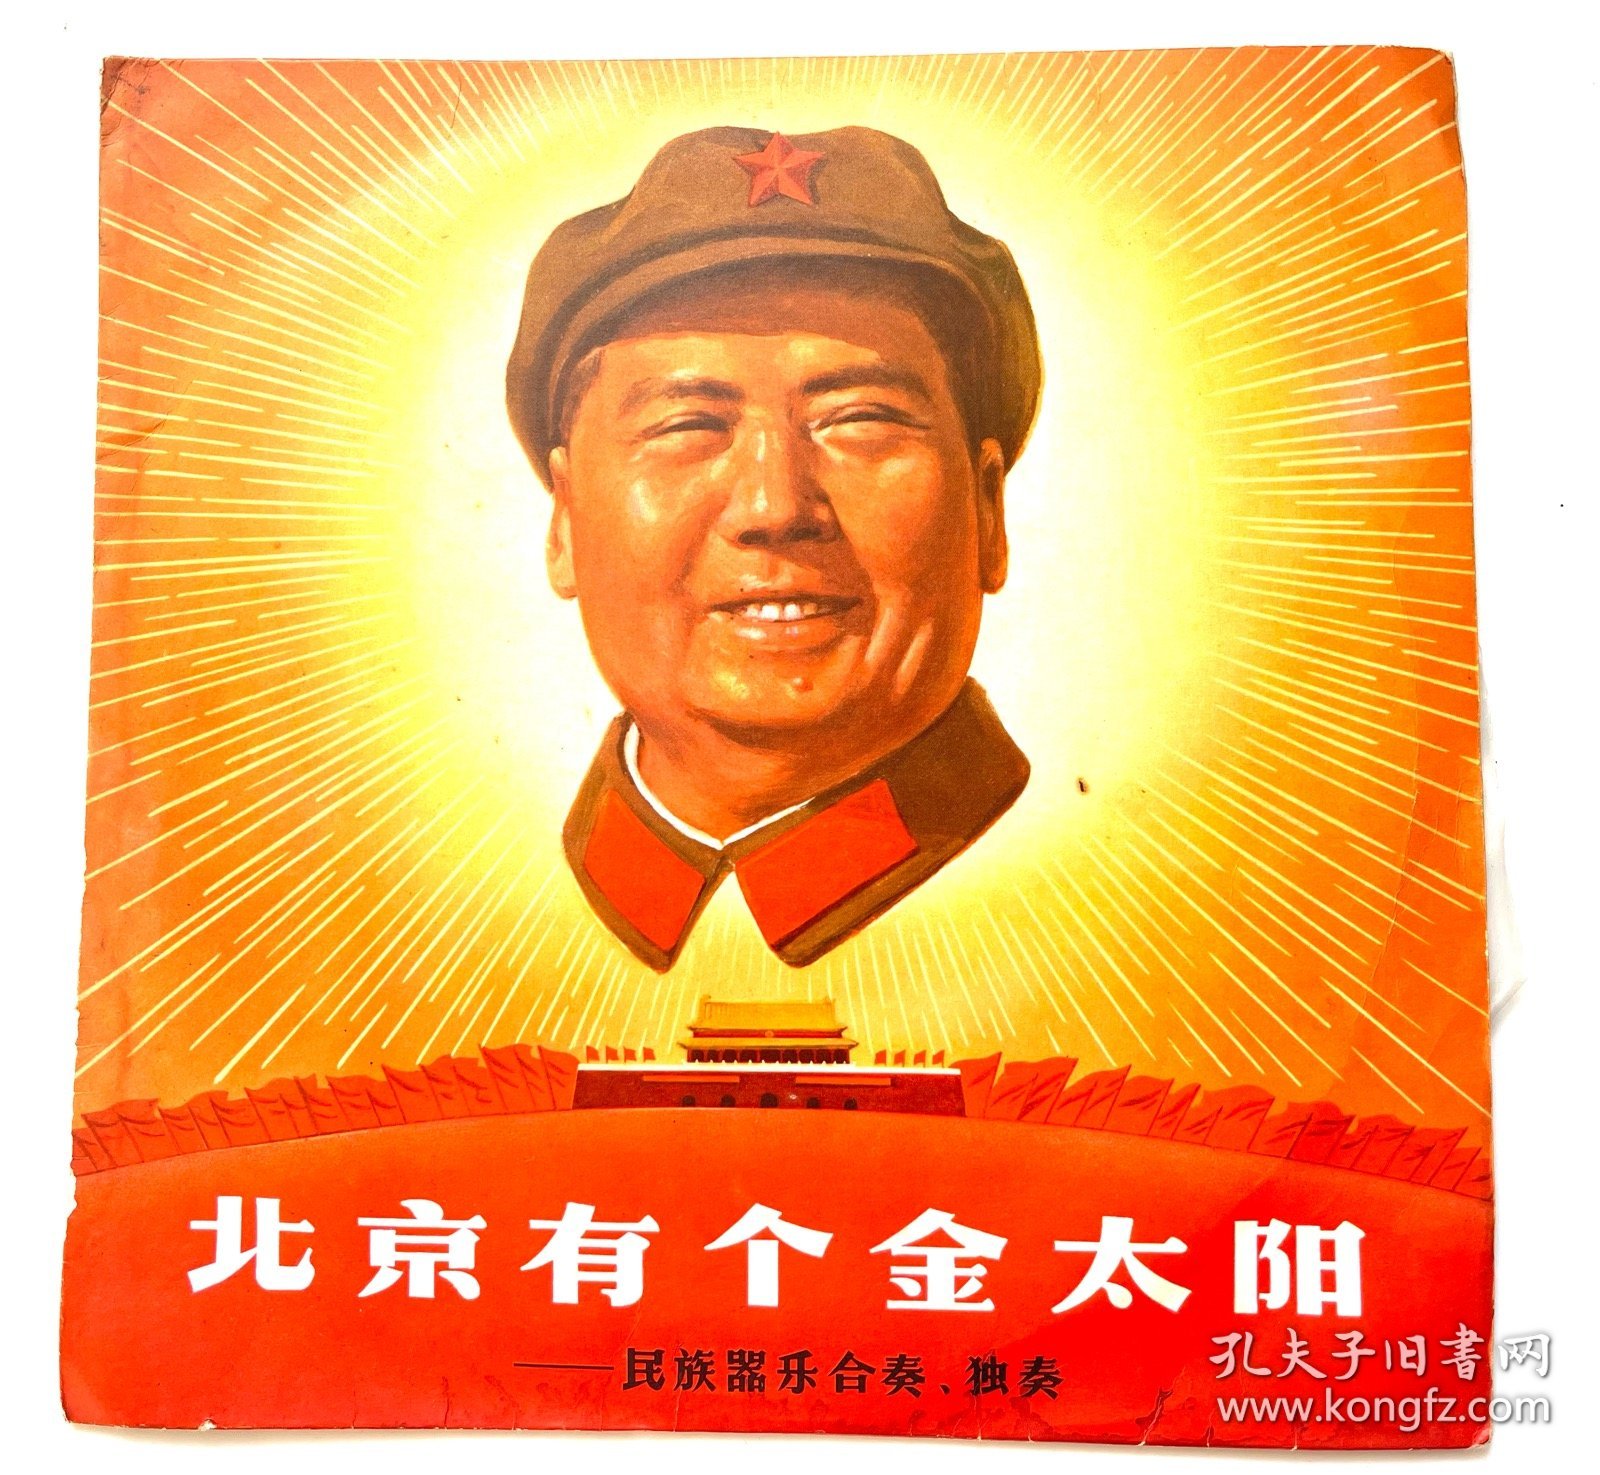 北京有个金太阳唱片